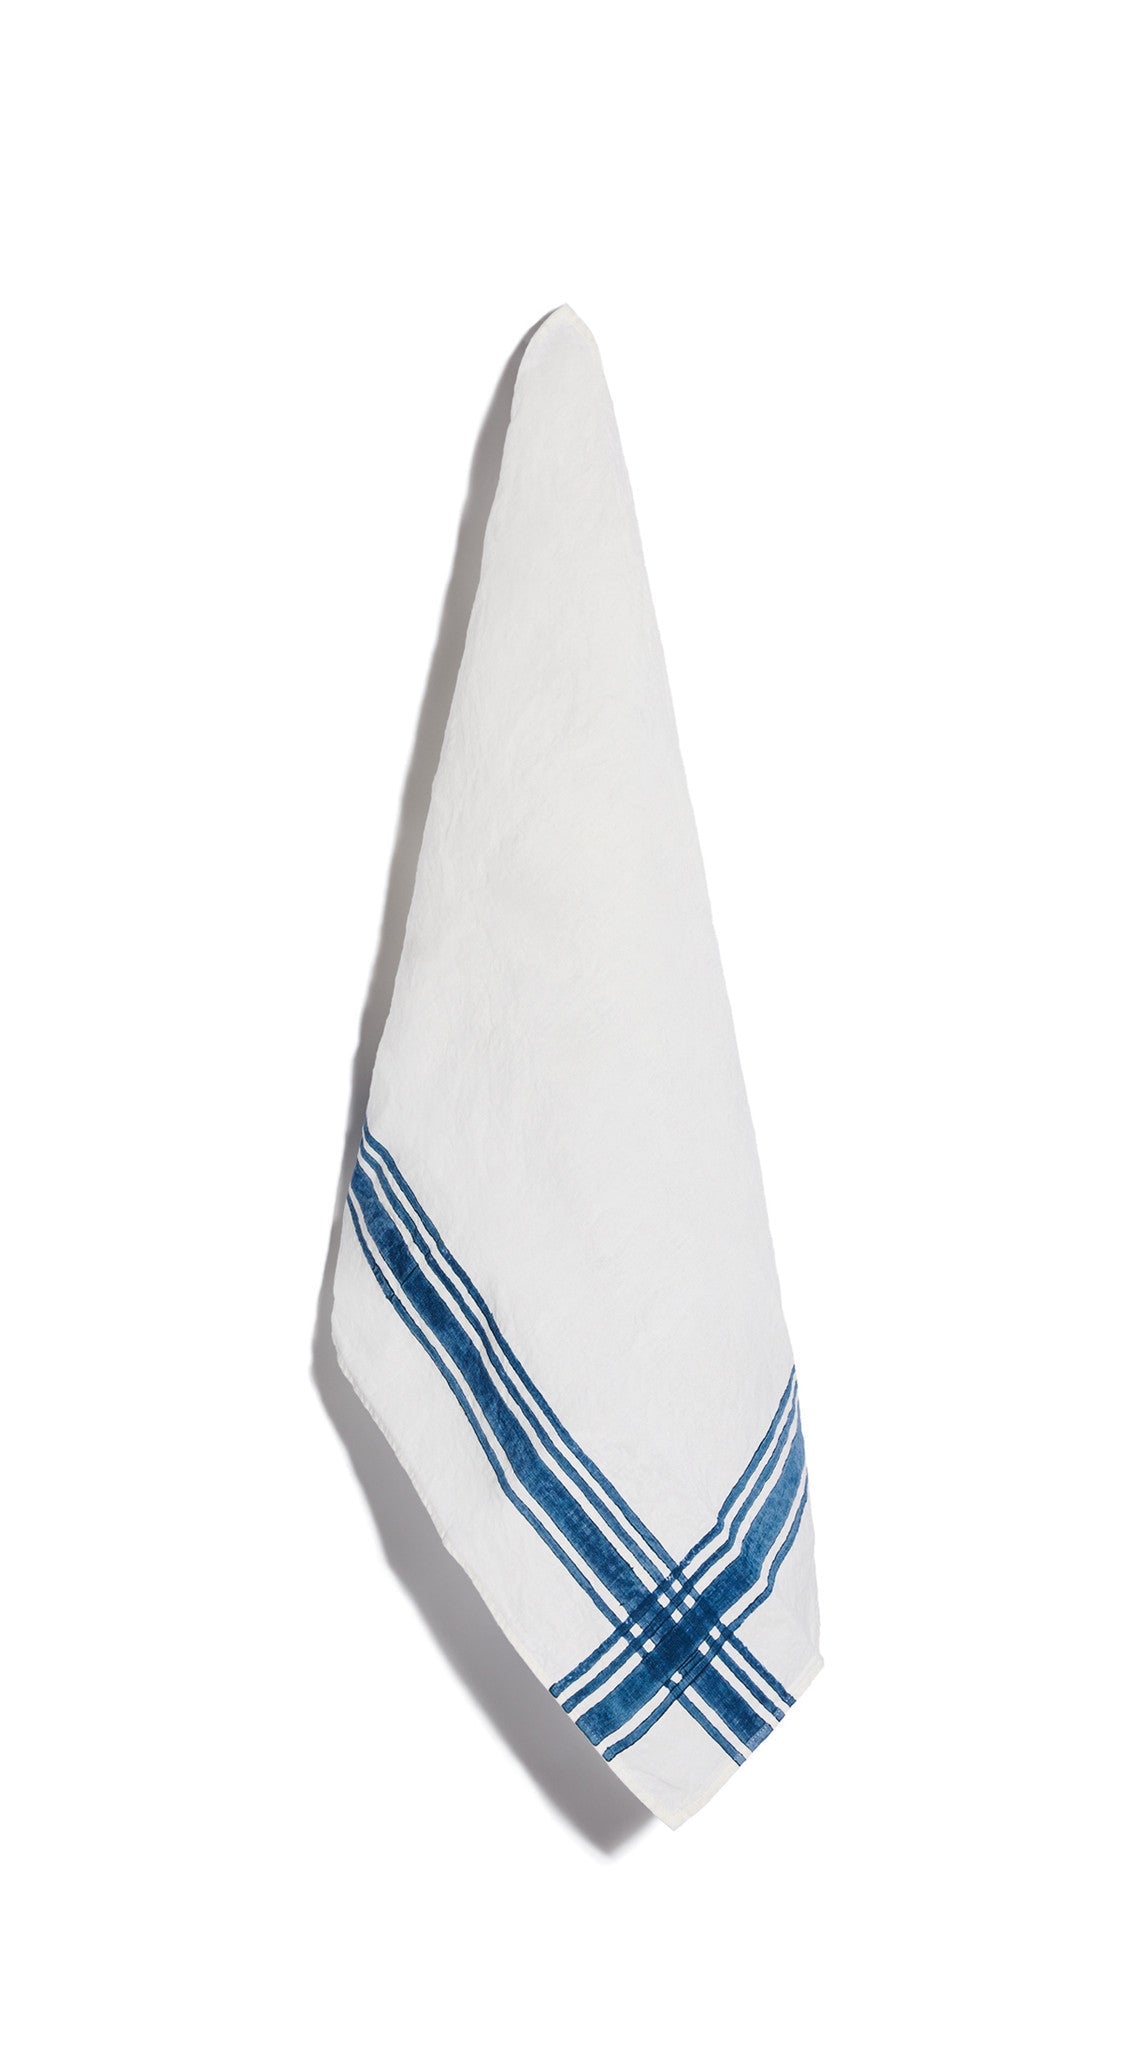 Stripe Linen Tea Towel in Midnight Blue, 55x70cm